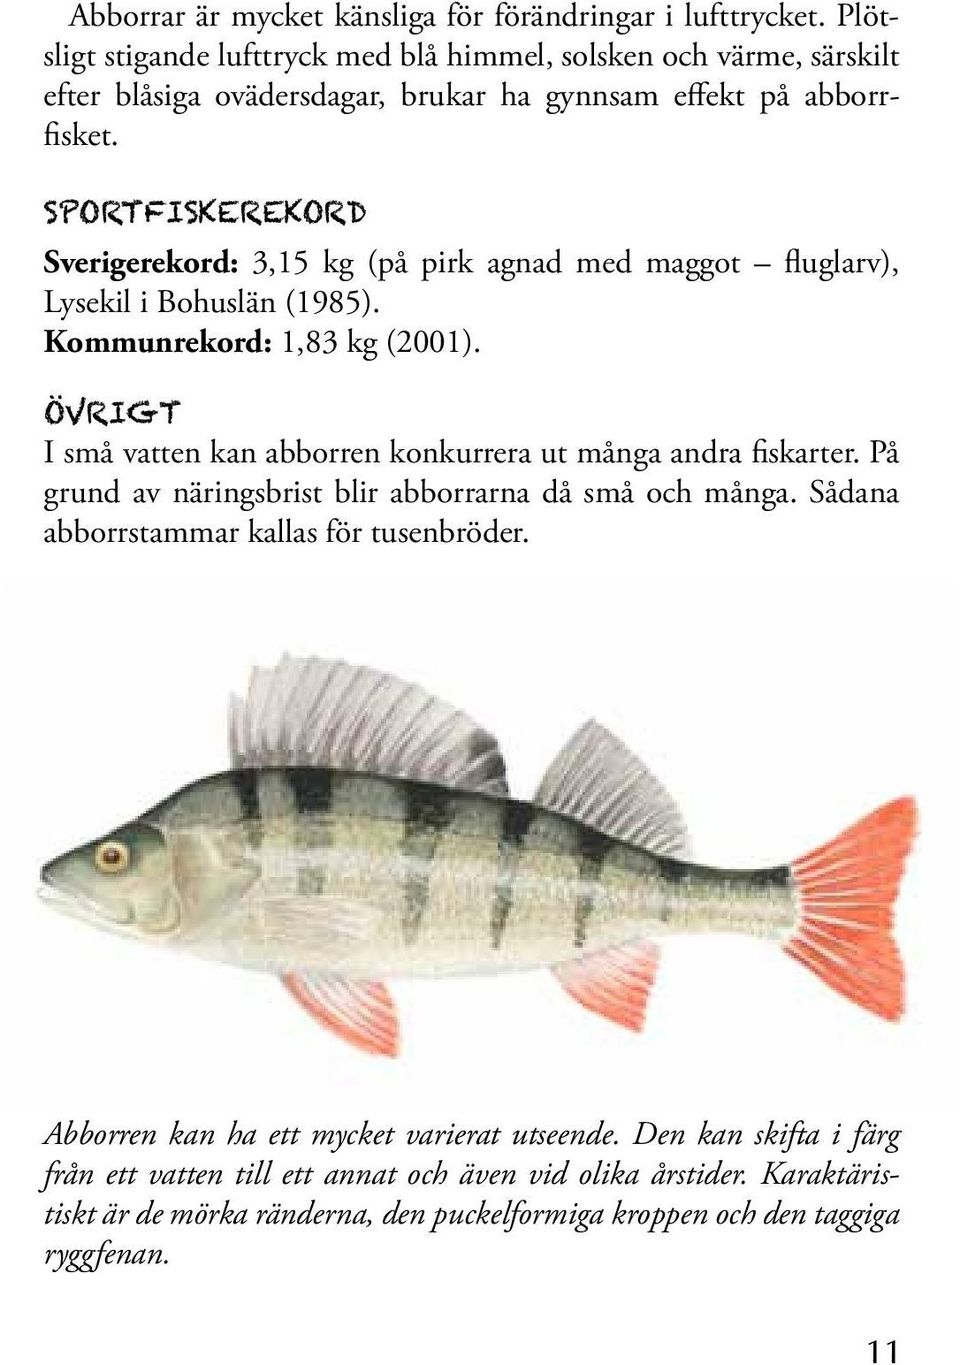 sportfiskerekord Sverigerekord: 3,15 kg (på pirk agnad med maggot fluglarv), Lysekil i Bohuslän (1985). Kommunrekord: 1,83 kg (2001).